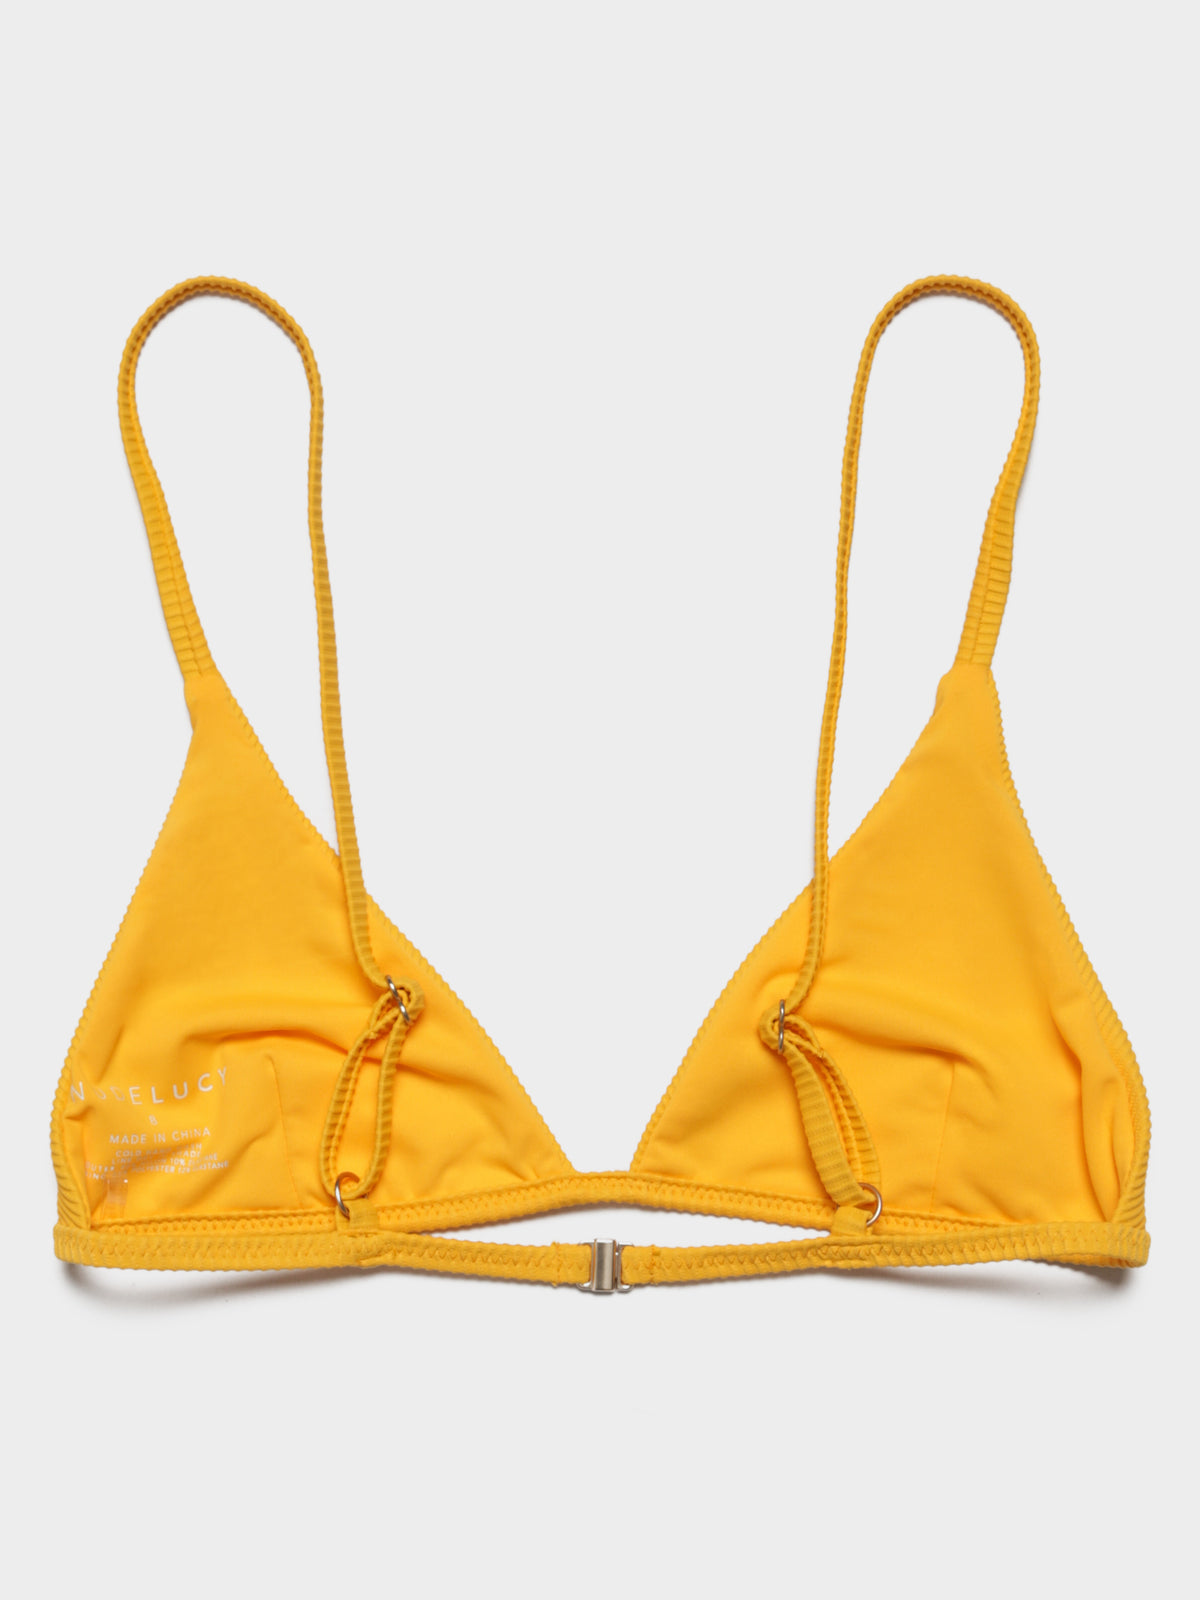 Rib High Apex Triangle Bikini Top in Papaya